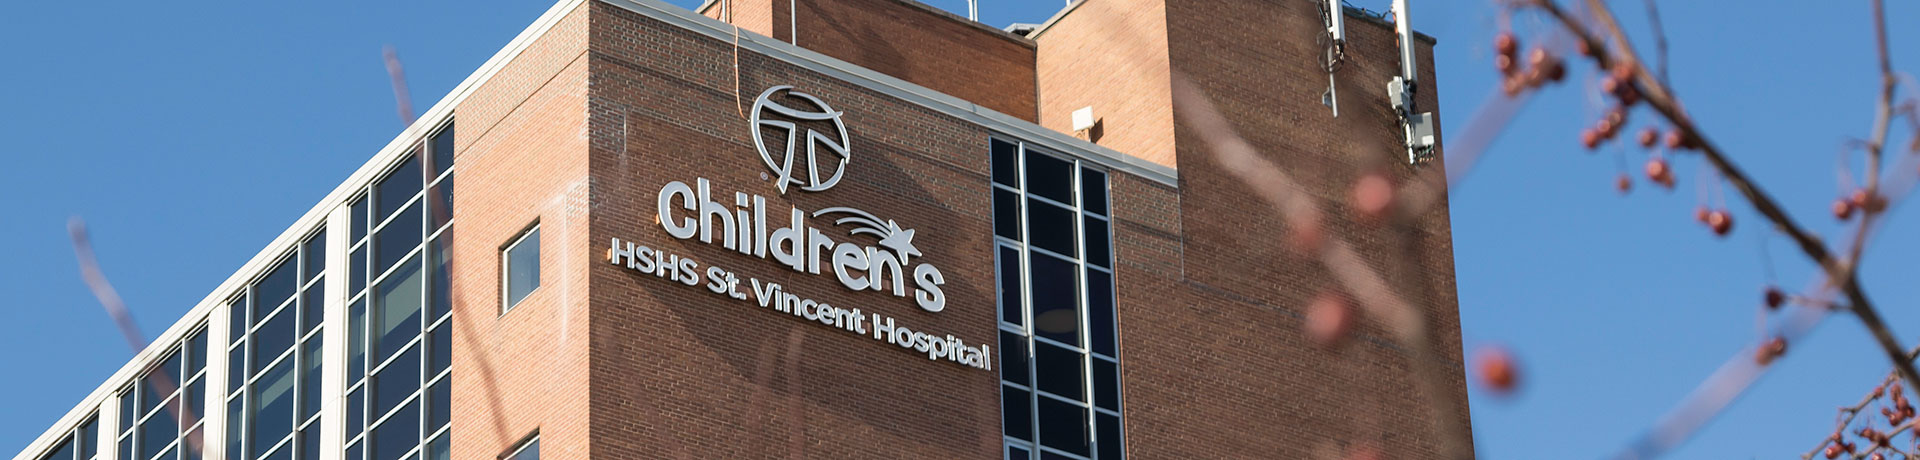 HSHS St Vincent Childrens Hospital exterior